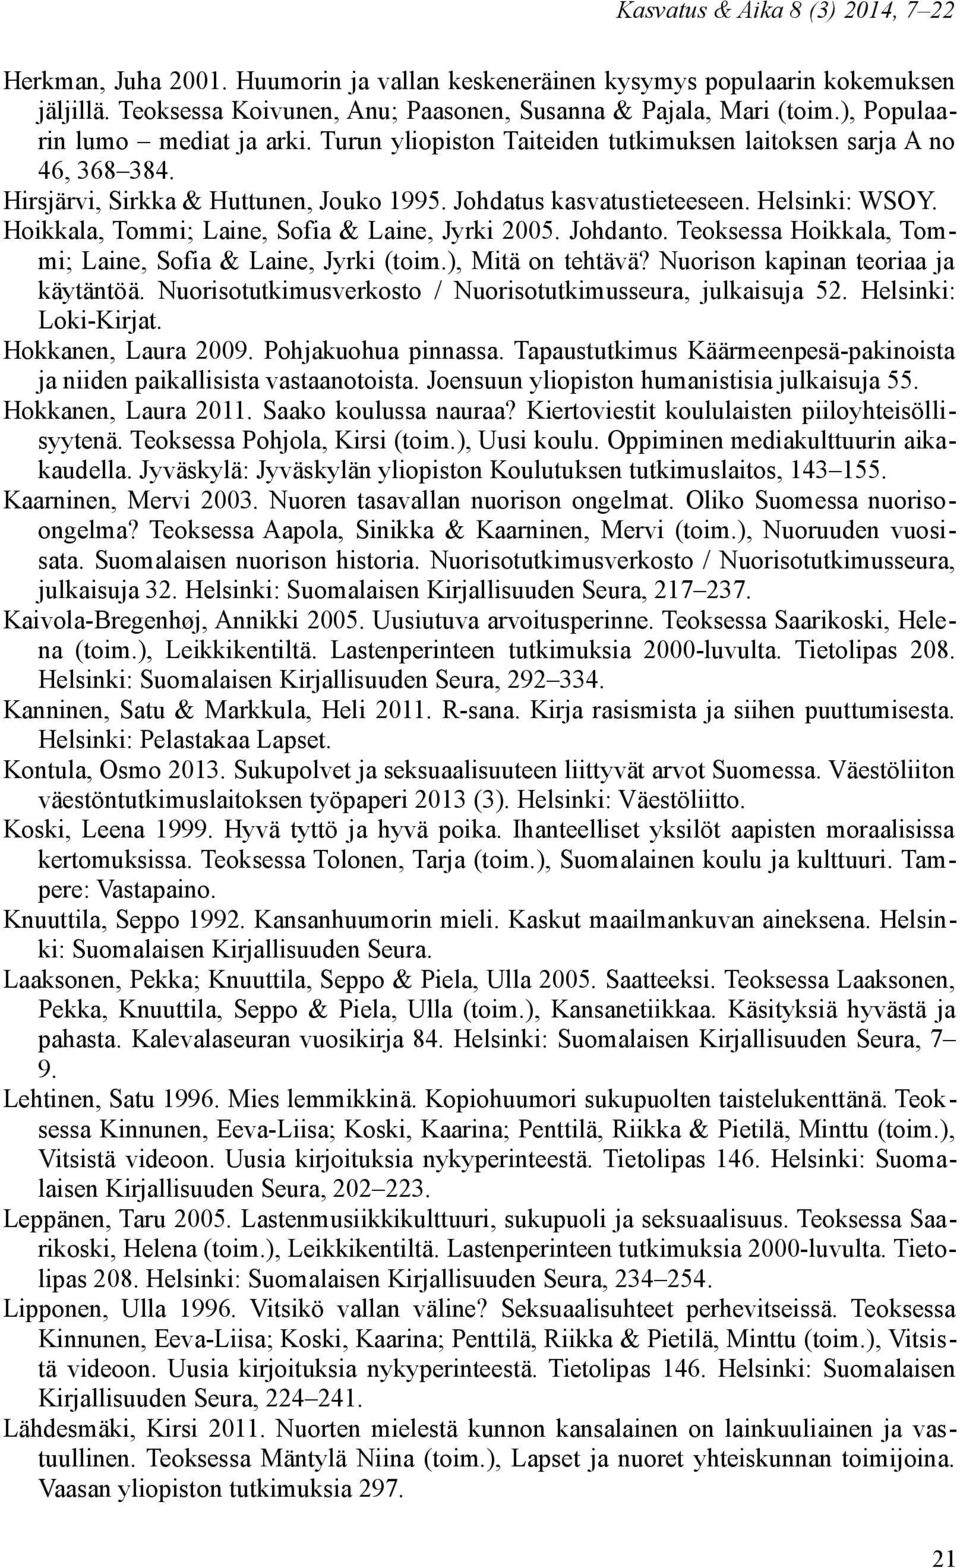 Hoikkala, Tommi; Laine, Sofia & Laine, Jyrki 2005. Johdanto. Teoksessa Hoikkala, Tommi; Laine, Sofia & Laine, Jyrki (toim.), Mitä on tehtävä? Nuorison kapinan teoriaa ja käytäntöä.